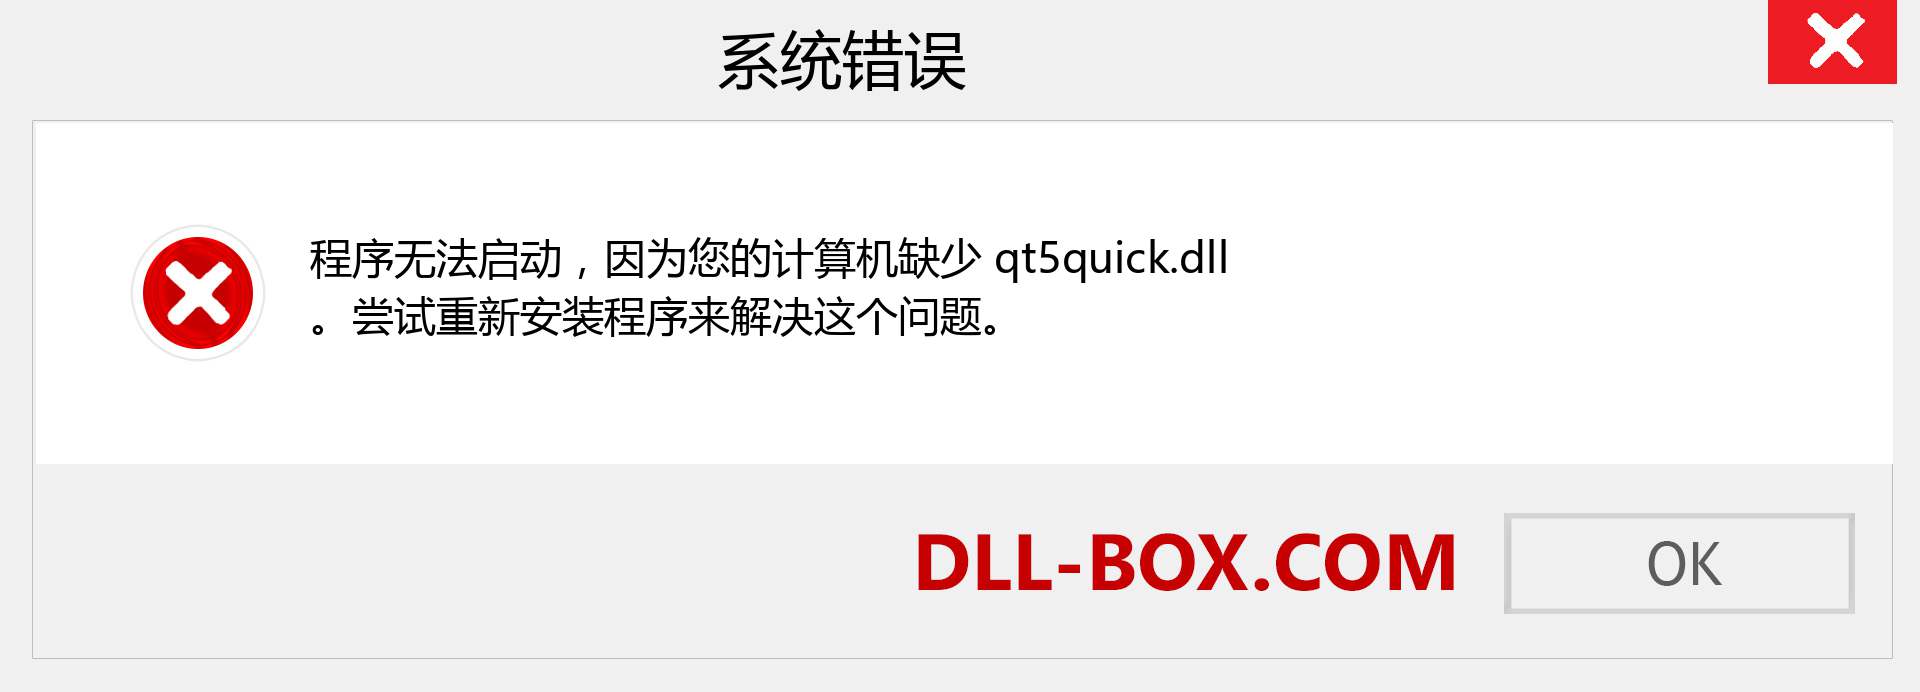 qt5quick.dll 文件丢失？。 适用于 Windows 7、8、10 的下载 - 修复 Windows、照片、图像上的 qt5quick dll 丢失错误